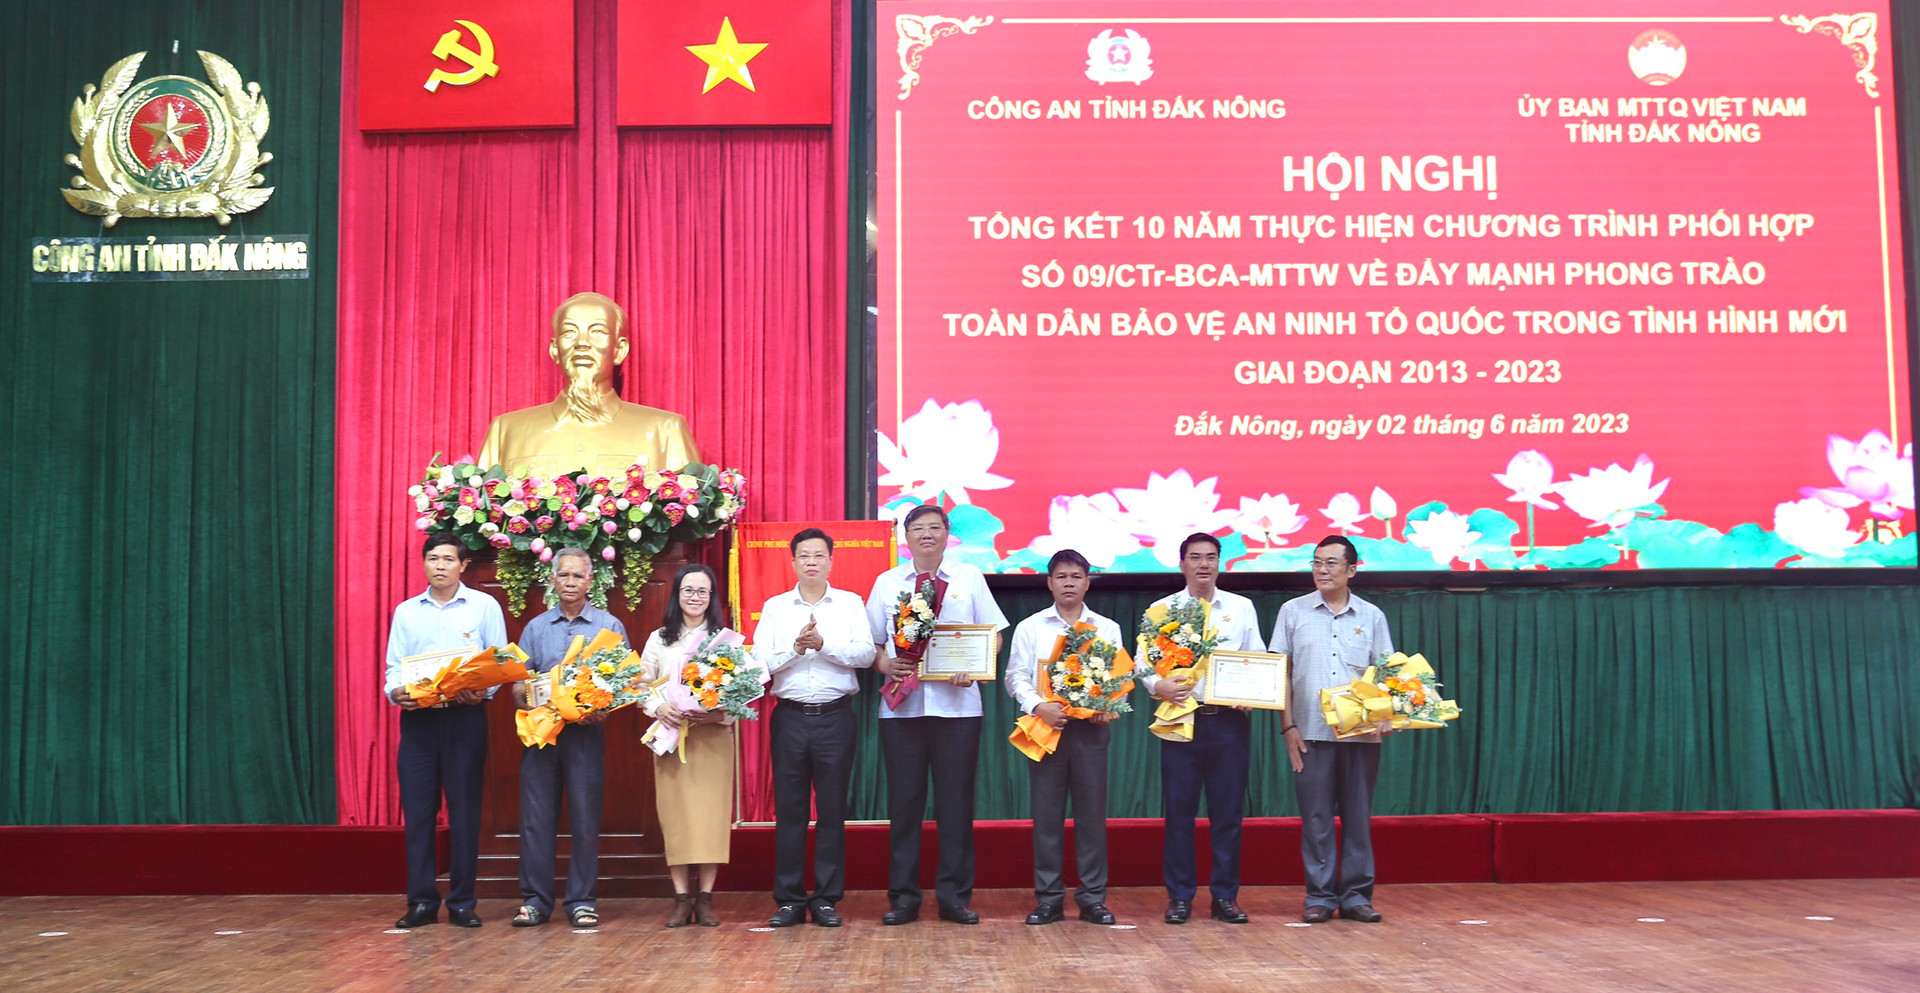 Ông Lưu Văn Trung, Phó Bí thư Tỉnh ủy, Chủ tịch HĐND tỉnh trao kỷ niệm chương cho các cá nhân.